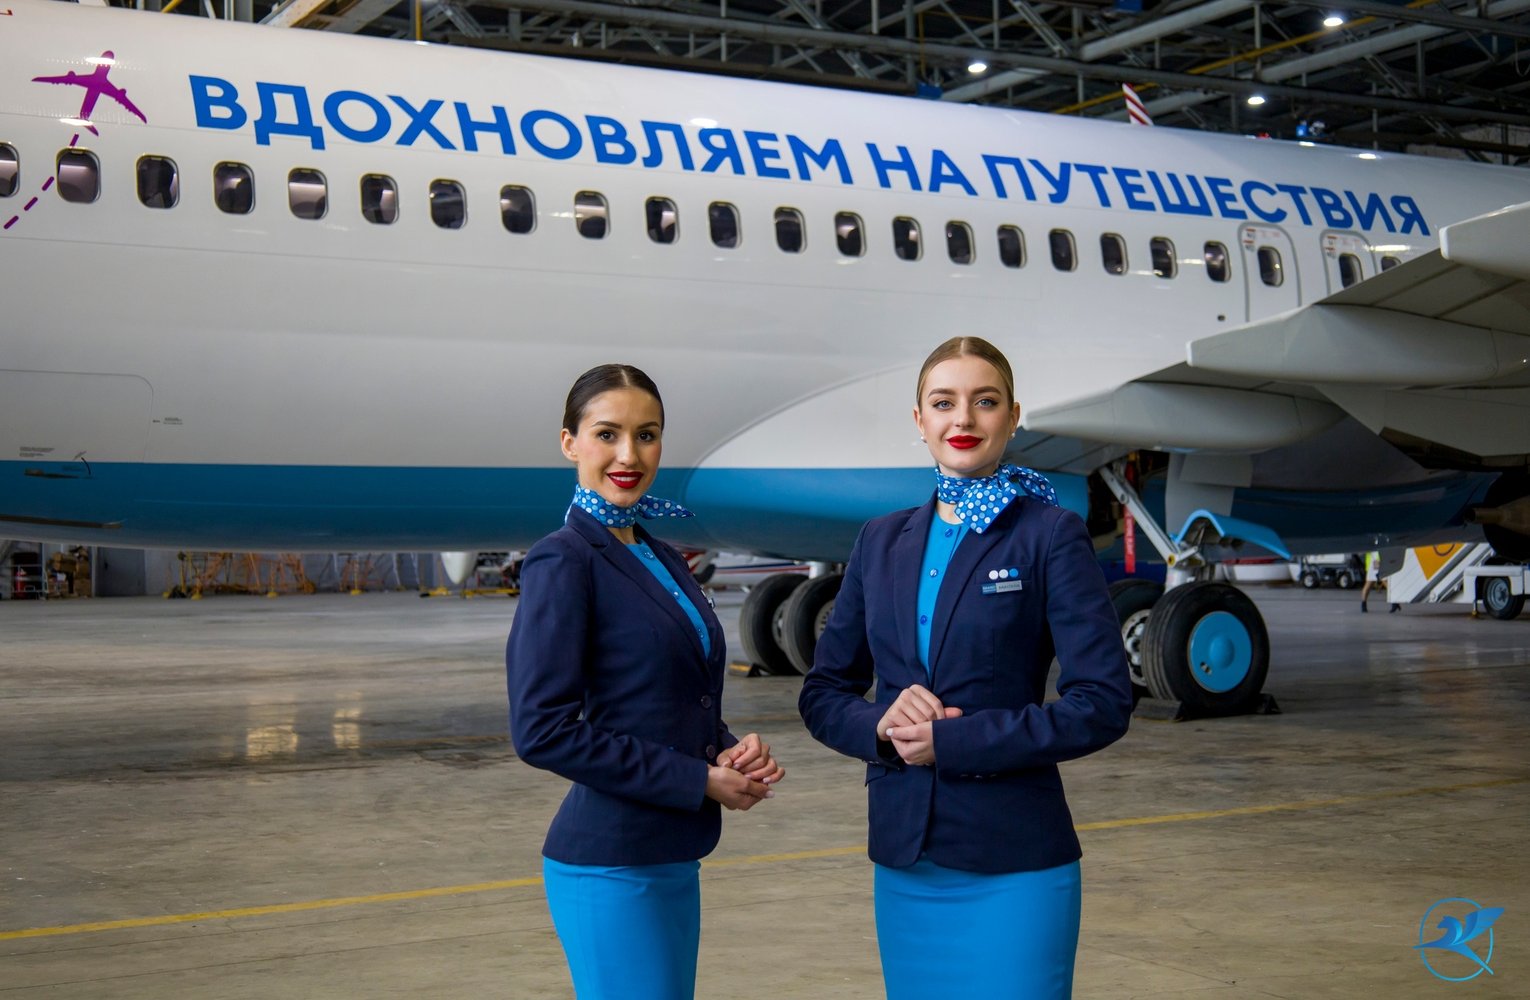 Фото: Пресс-служба аэропорта Внуково